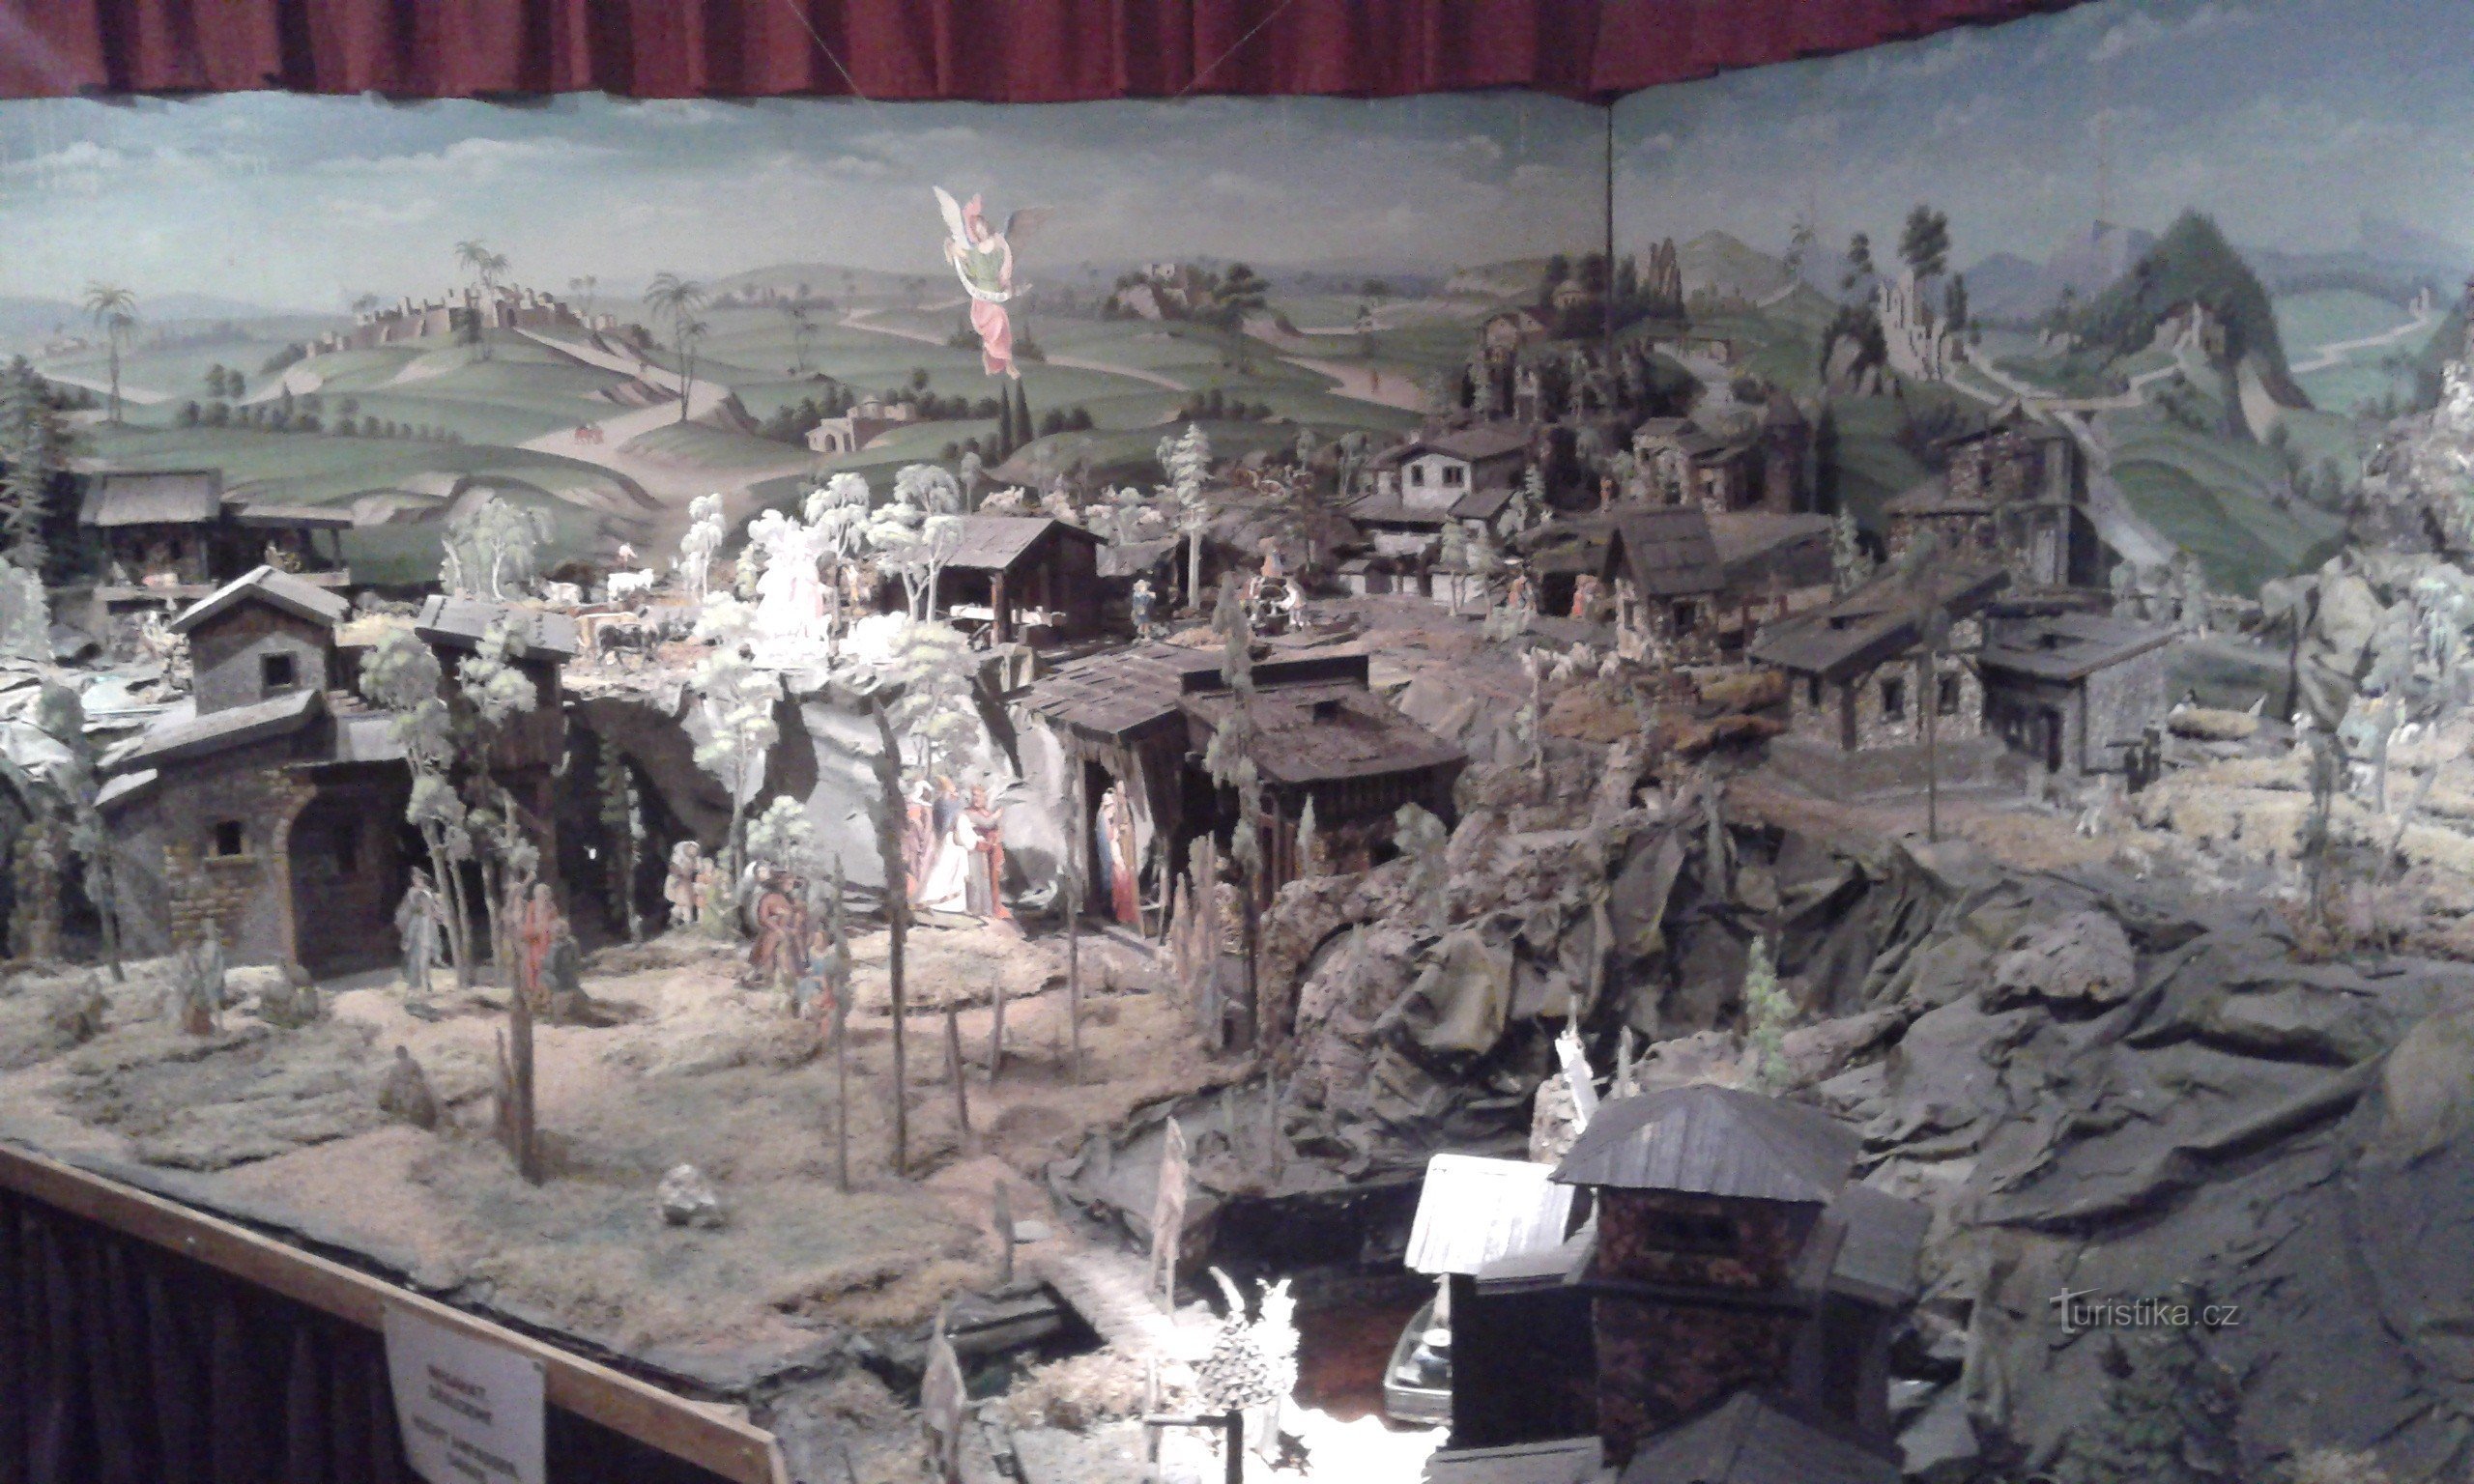 Bảo tàng cảnh giáng sinh, đồ chơi và lịch sử của ngôi làng - Kryštofovo údolí